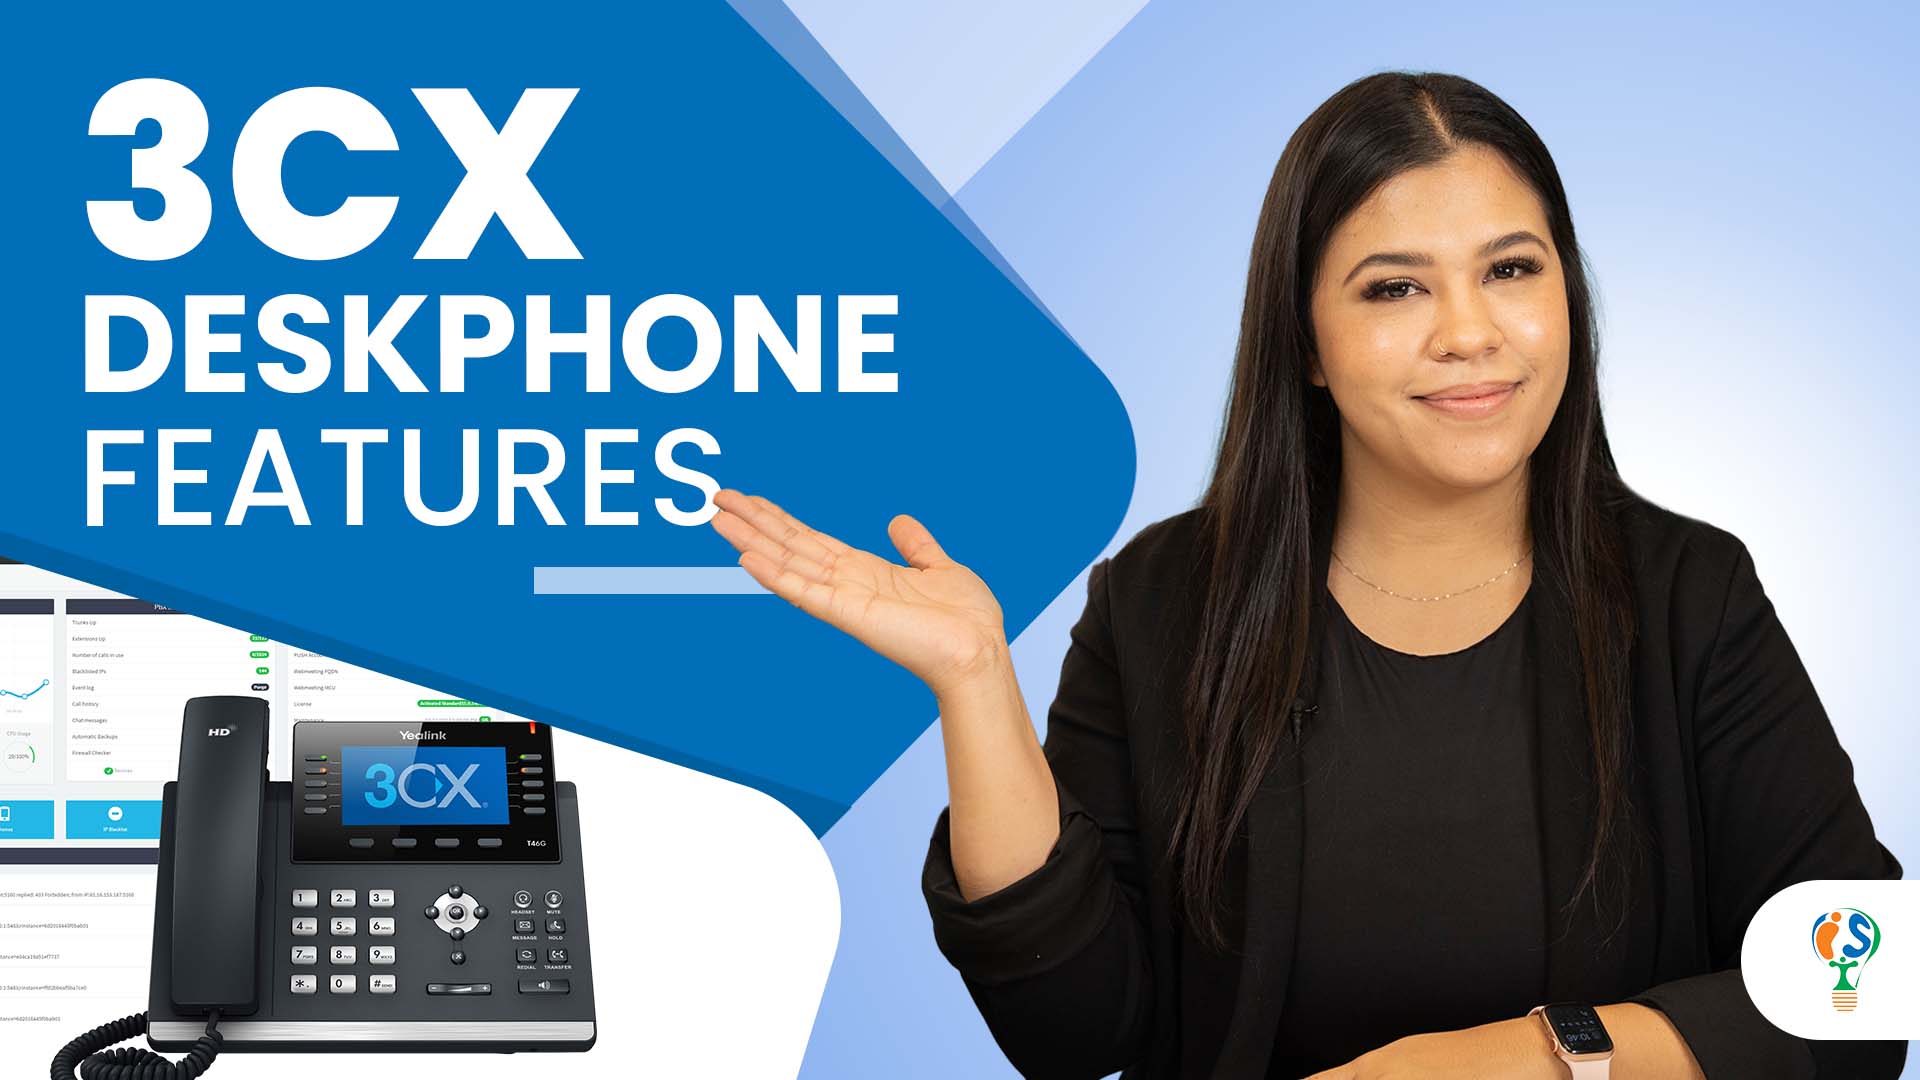 3CX Desk Phone features